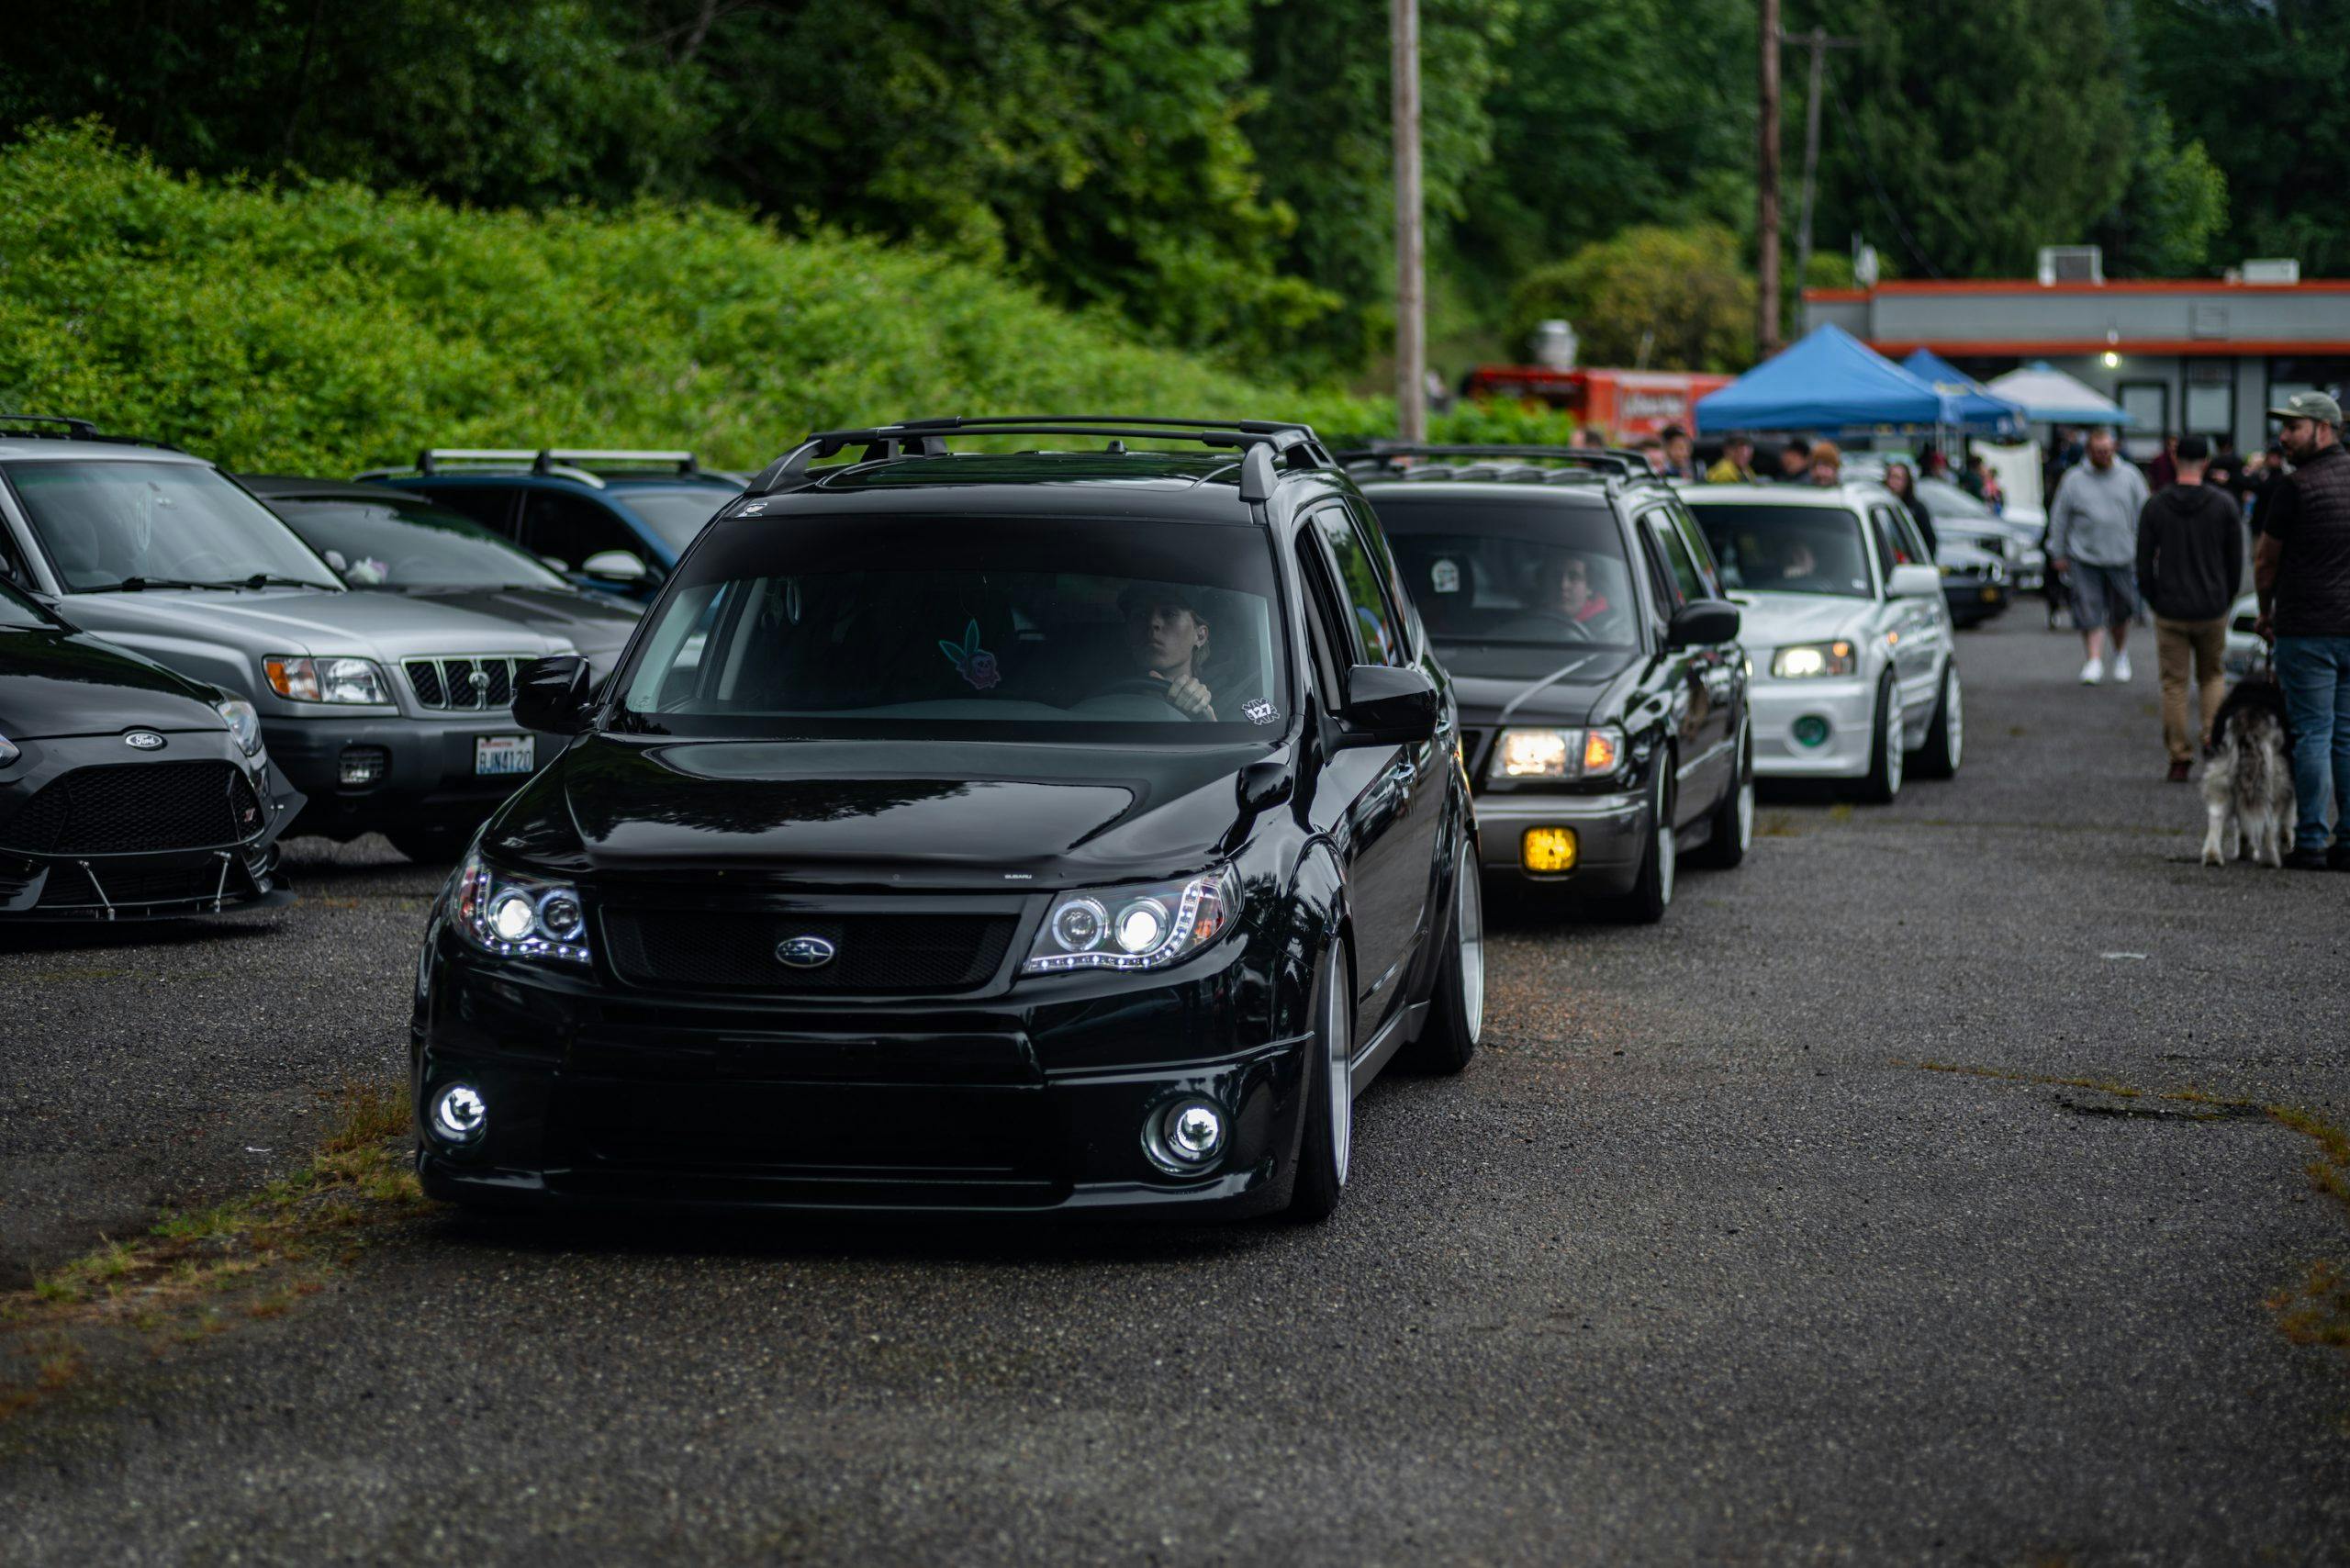 Subaru Wagons Rolling Through Festival